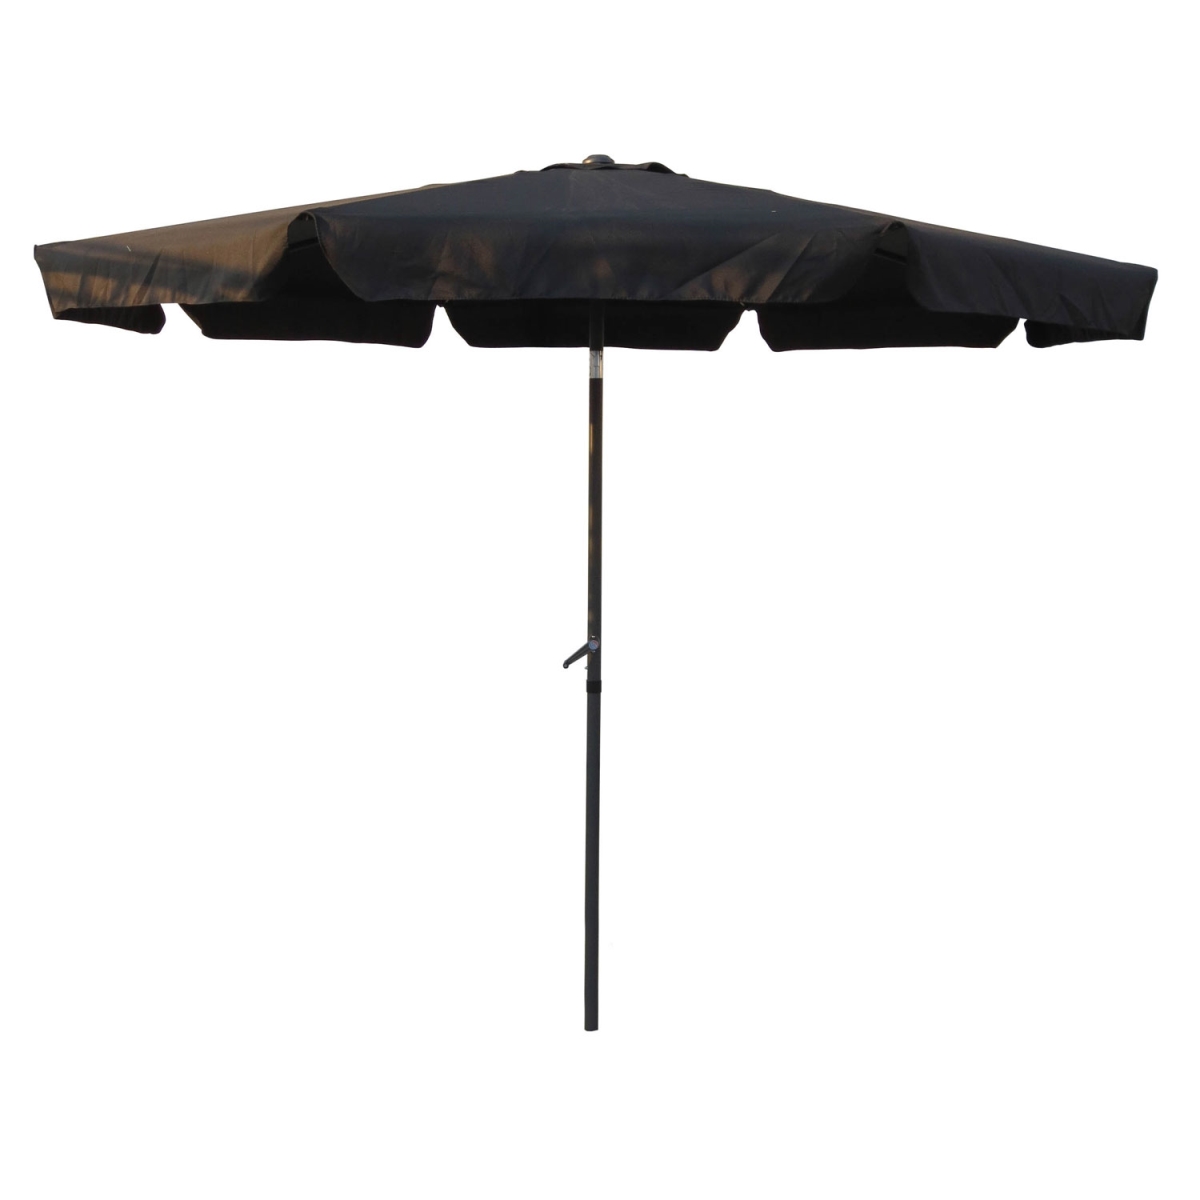 Yf-1104-3m-bk 10 Ft. Outdoor Aluminum Umbrella With Flaps, Black